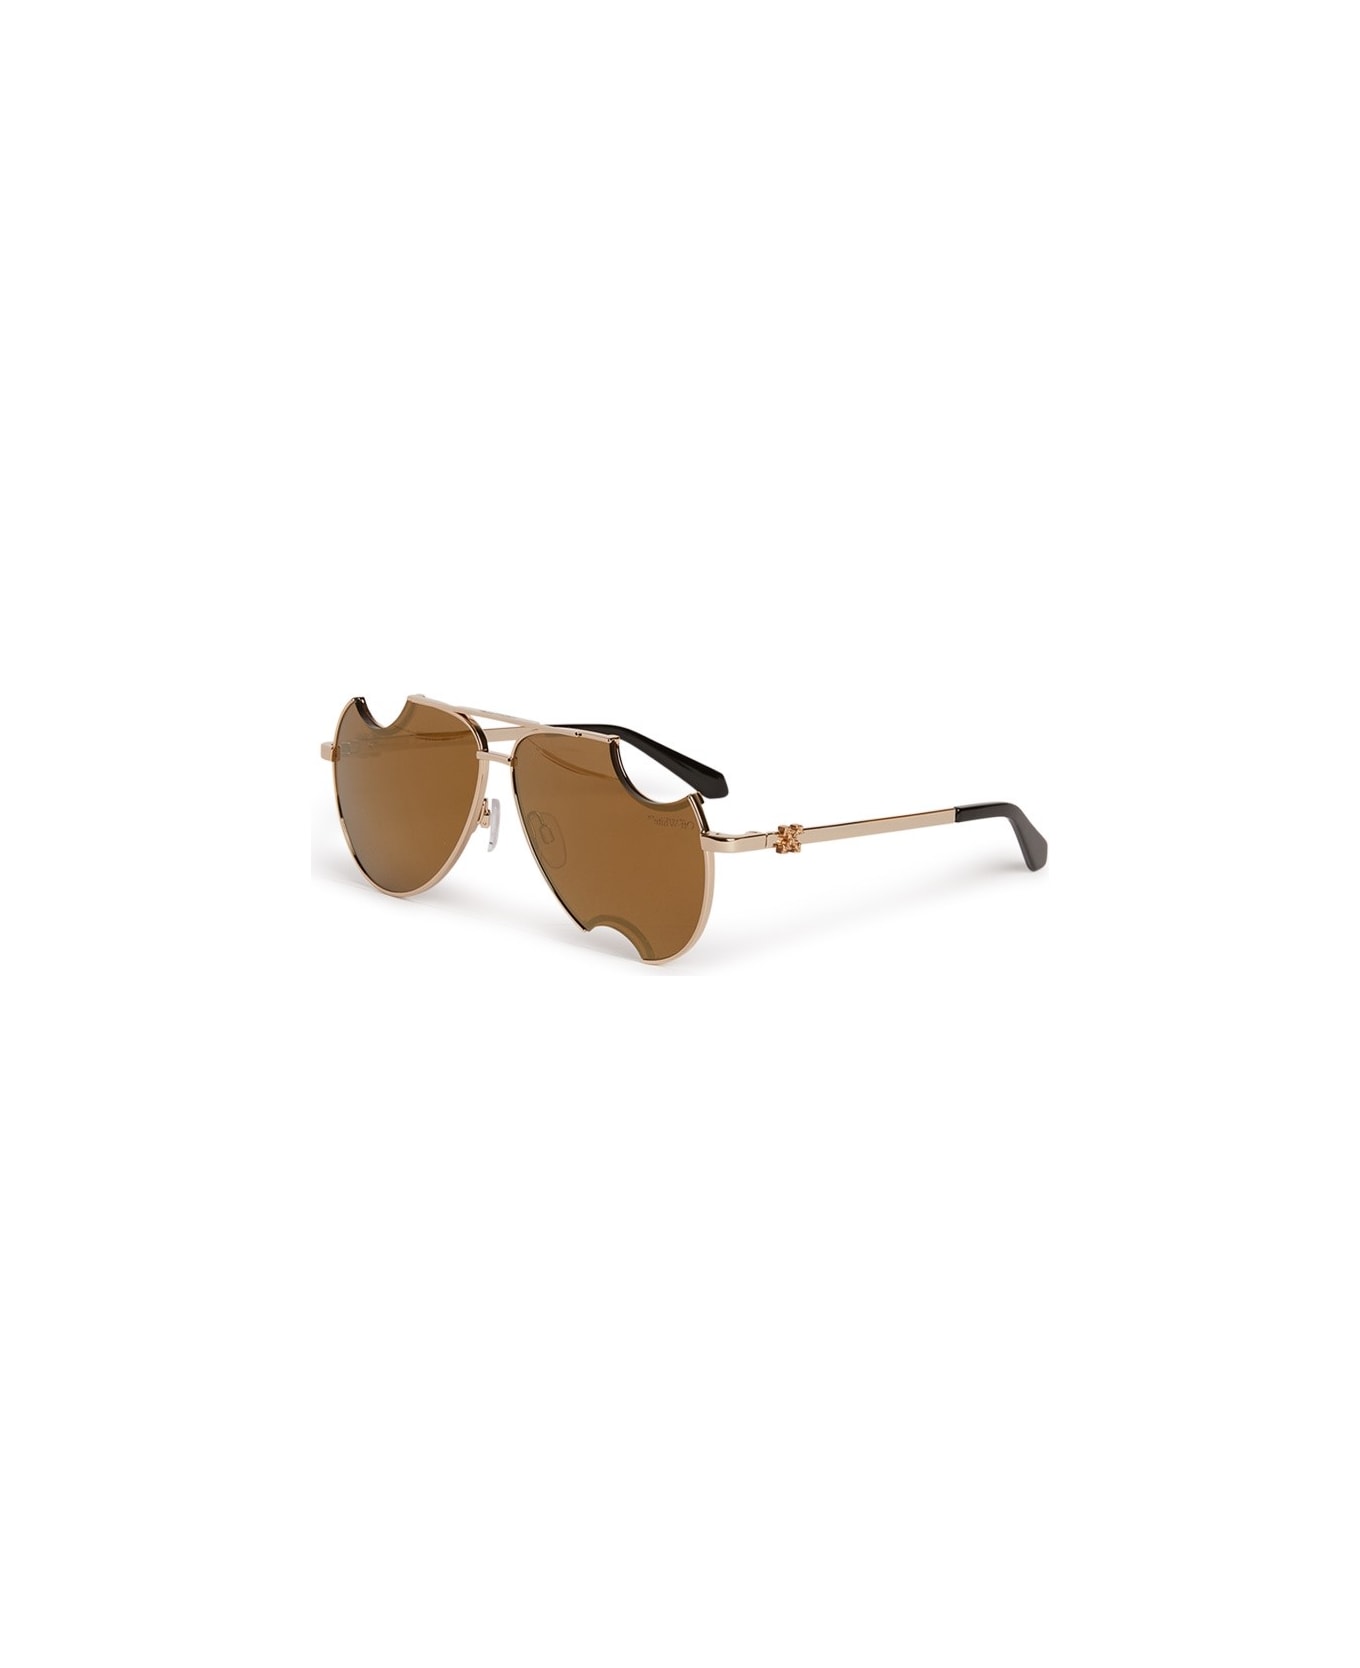 Off-White DALLAS SUNGLASSES Sunglasses - Gold Mirror